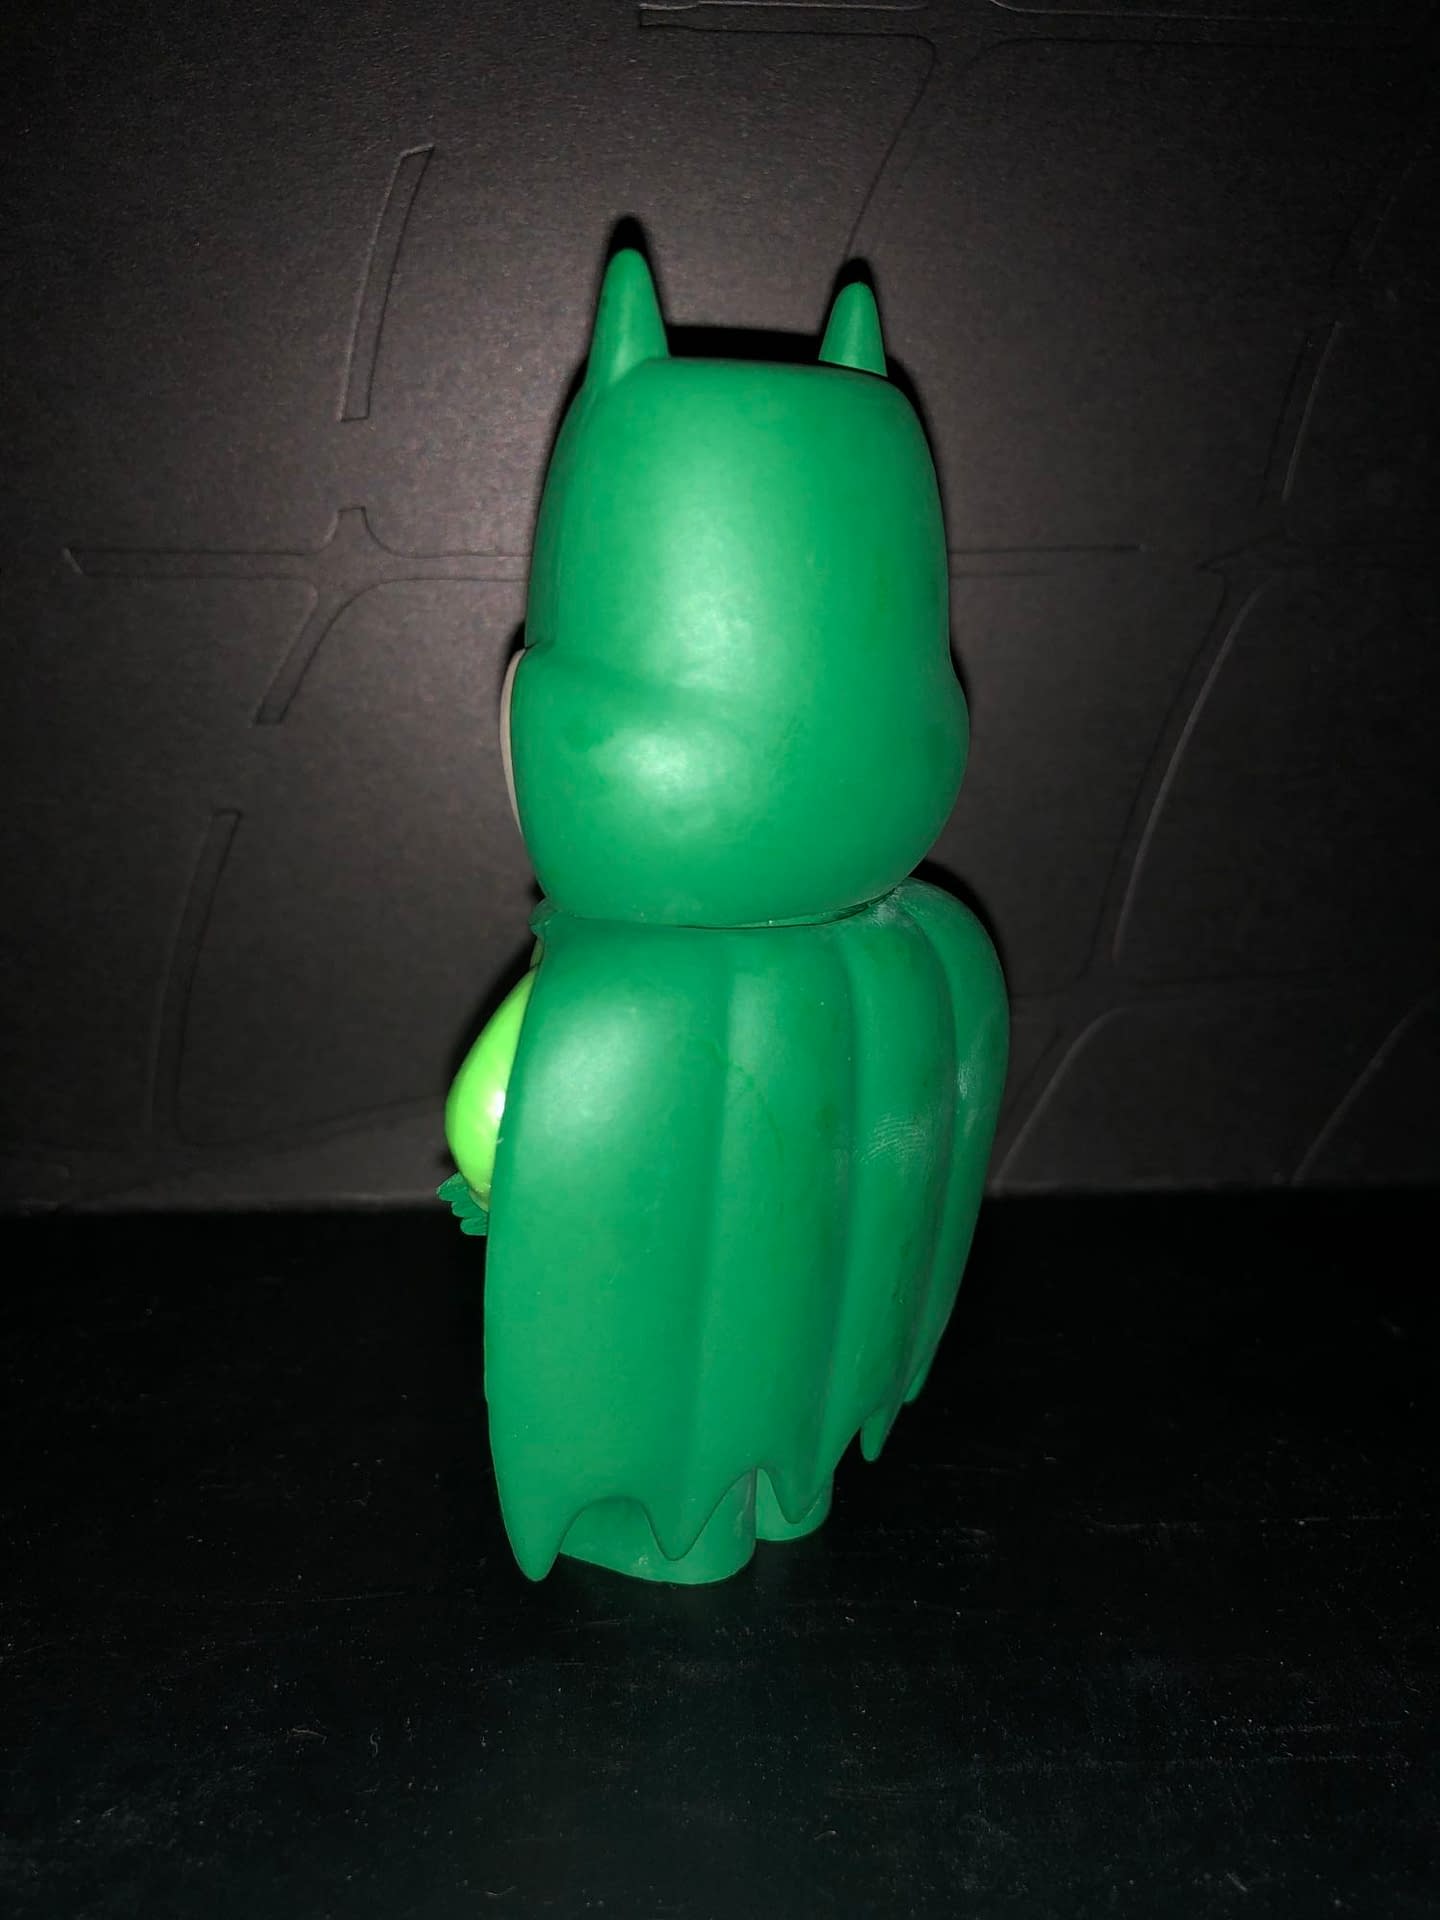 Funko Soda Vinyl Figure Emerald City Comic Con Exclusive Green Batman Figure, back view of figure.